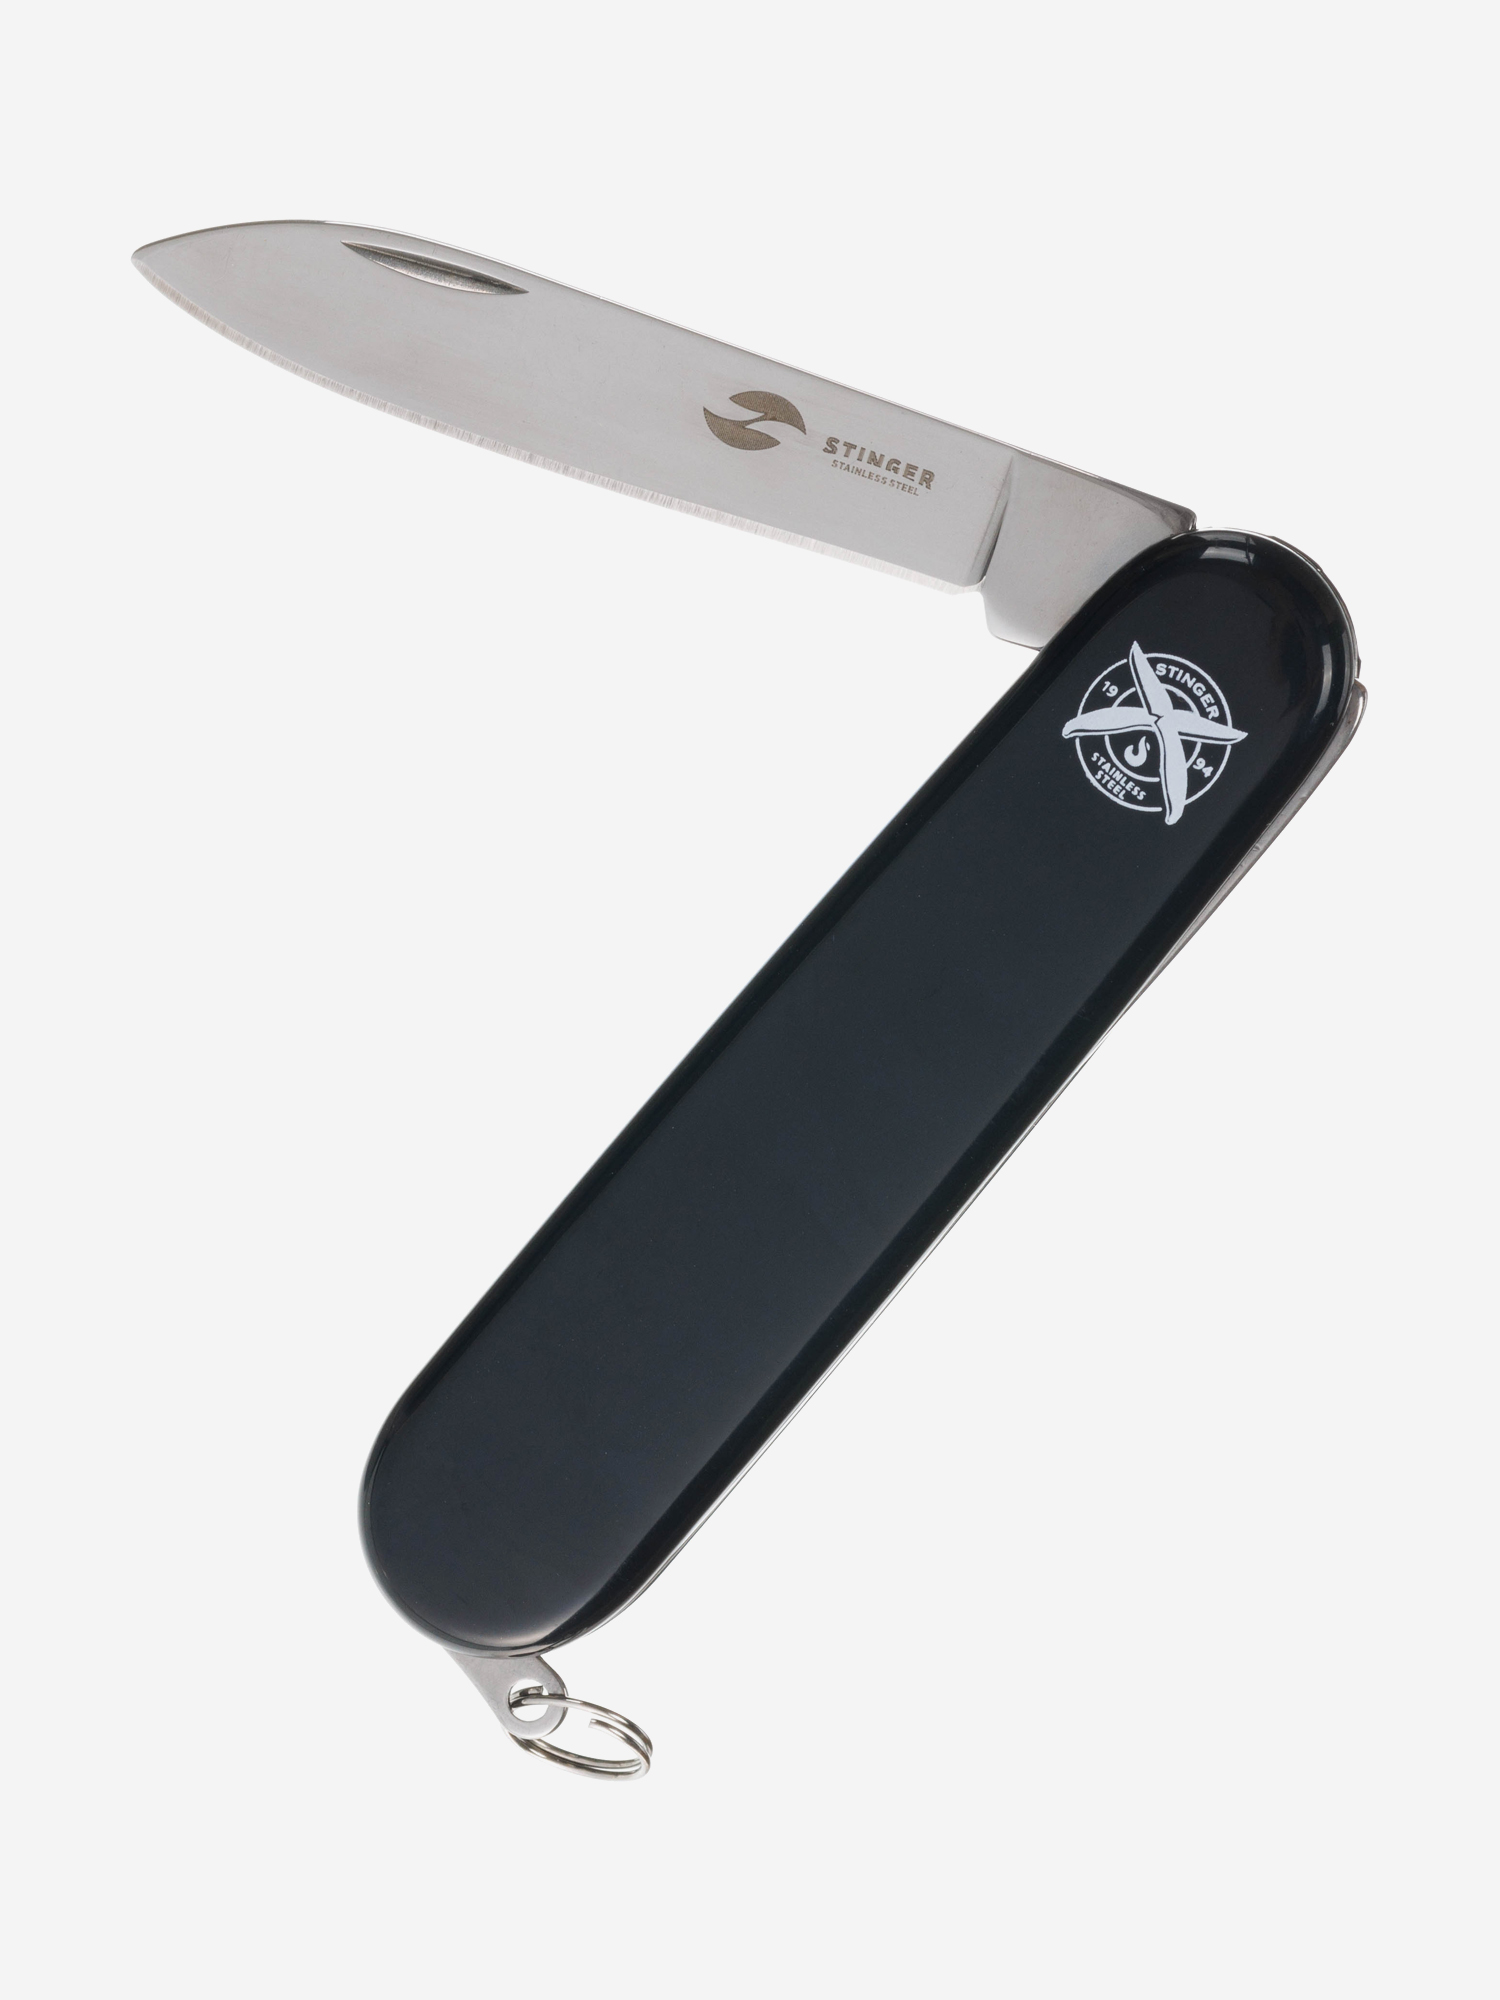 Нож перочинный Stinger, 90 мм, 2 функции, материал рукояти: АБС-пластик (черный), Черный нож перочинный stinger 90 мм 4 функции материал рукояти абс пластик синий синий